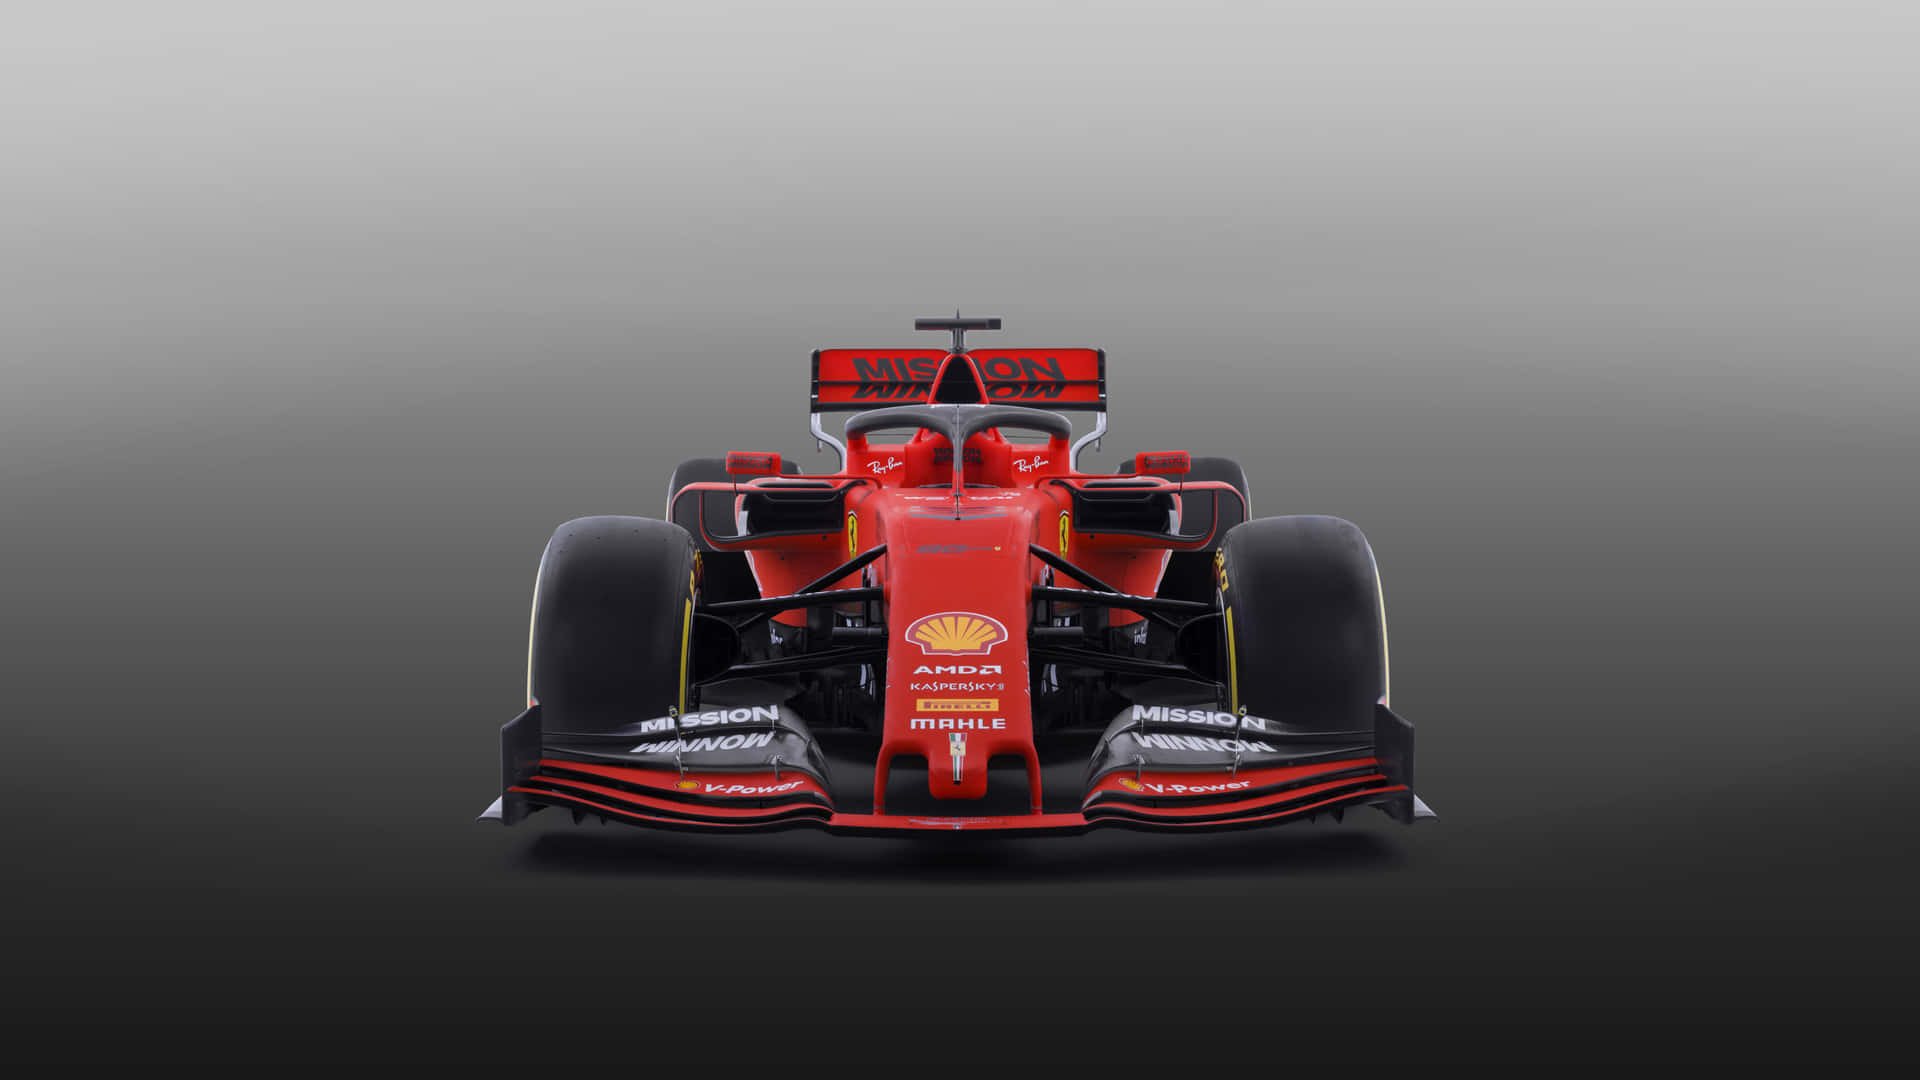 Ferrari F1 Car In Red